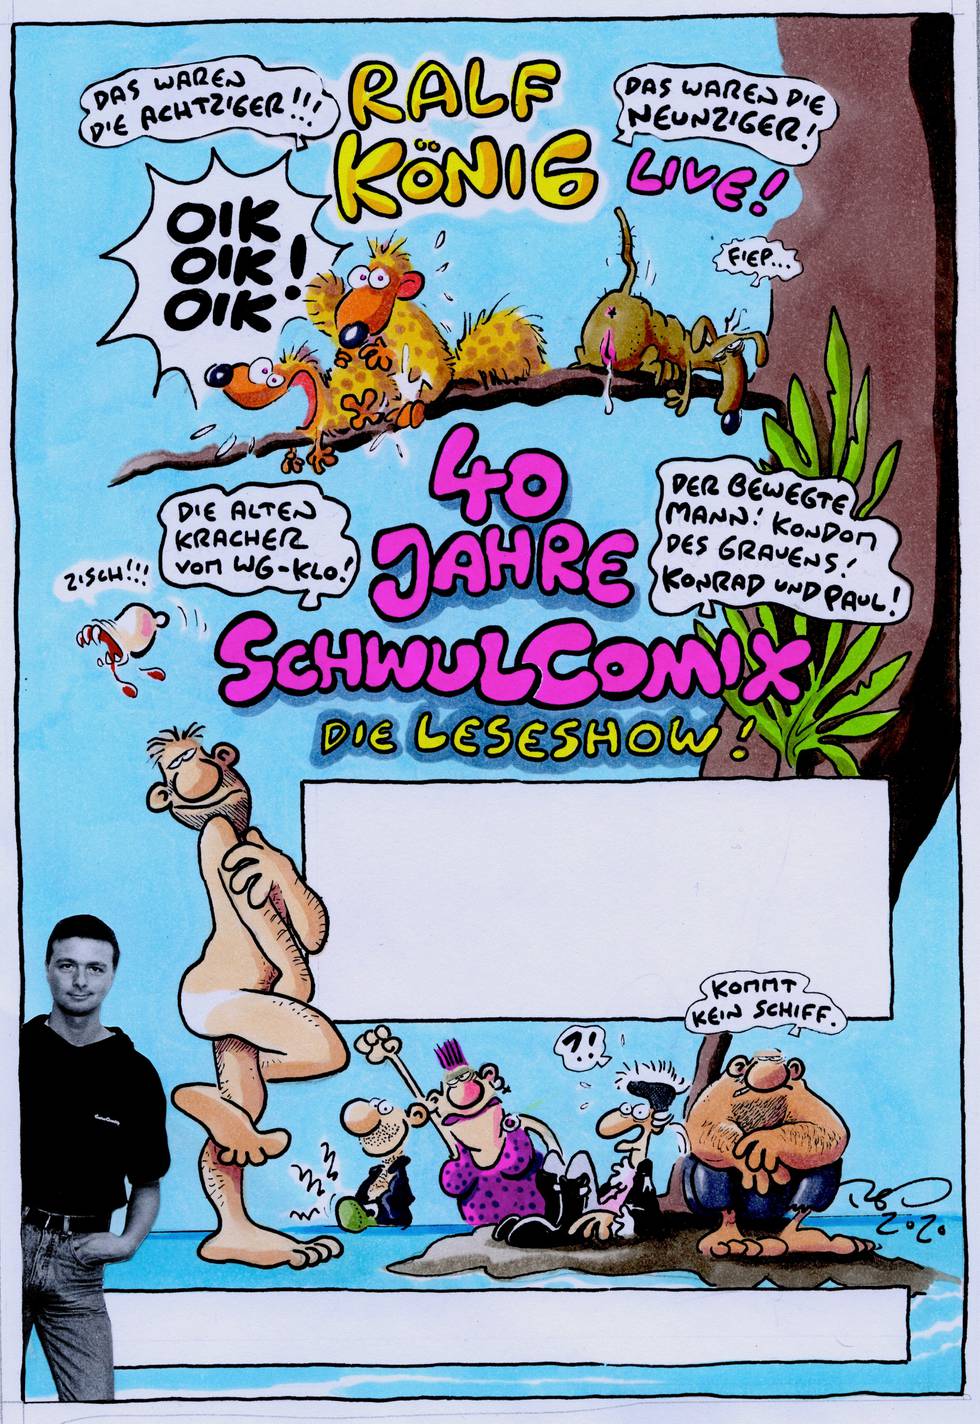 RalfKoenig-Schwulcomix-Plakat.jpg